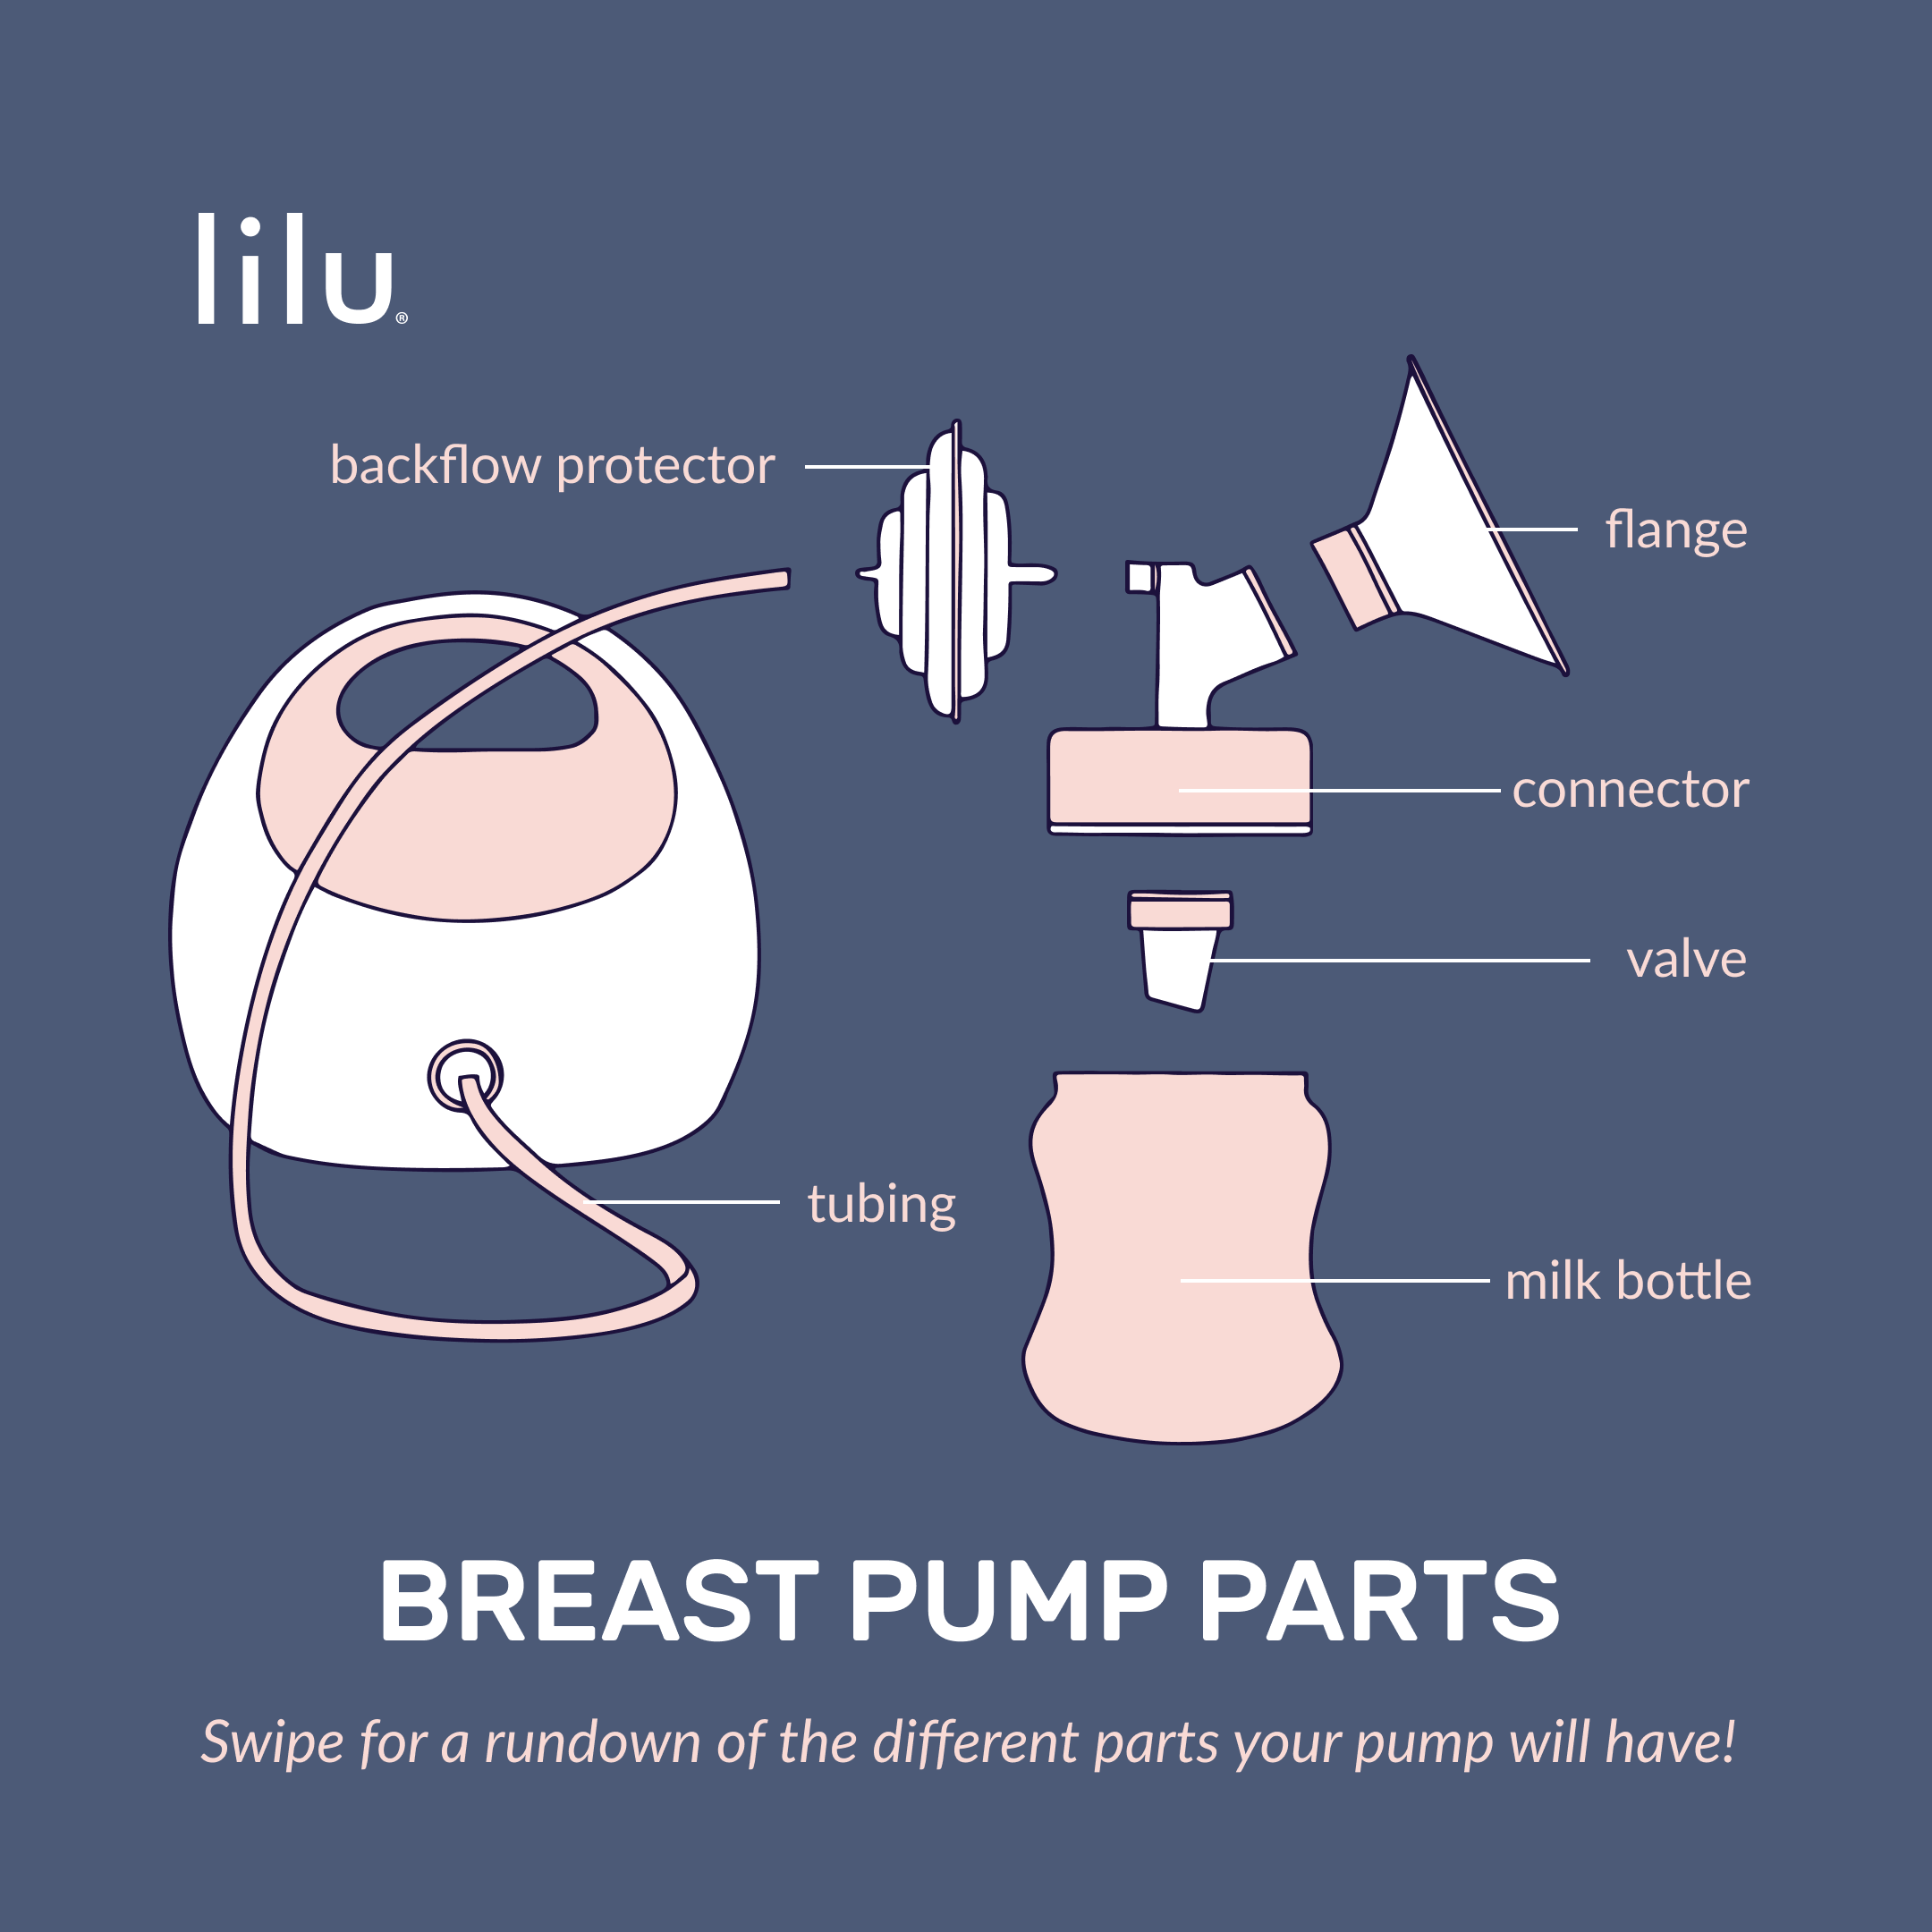 https://www.wearlilu.com/cdn/shop/articles/Breast_Pump_Parts_Cover.png?v=1594745910